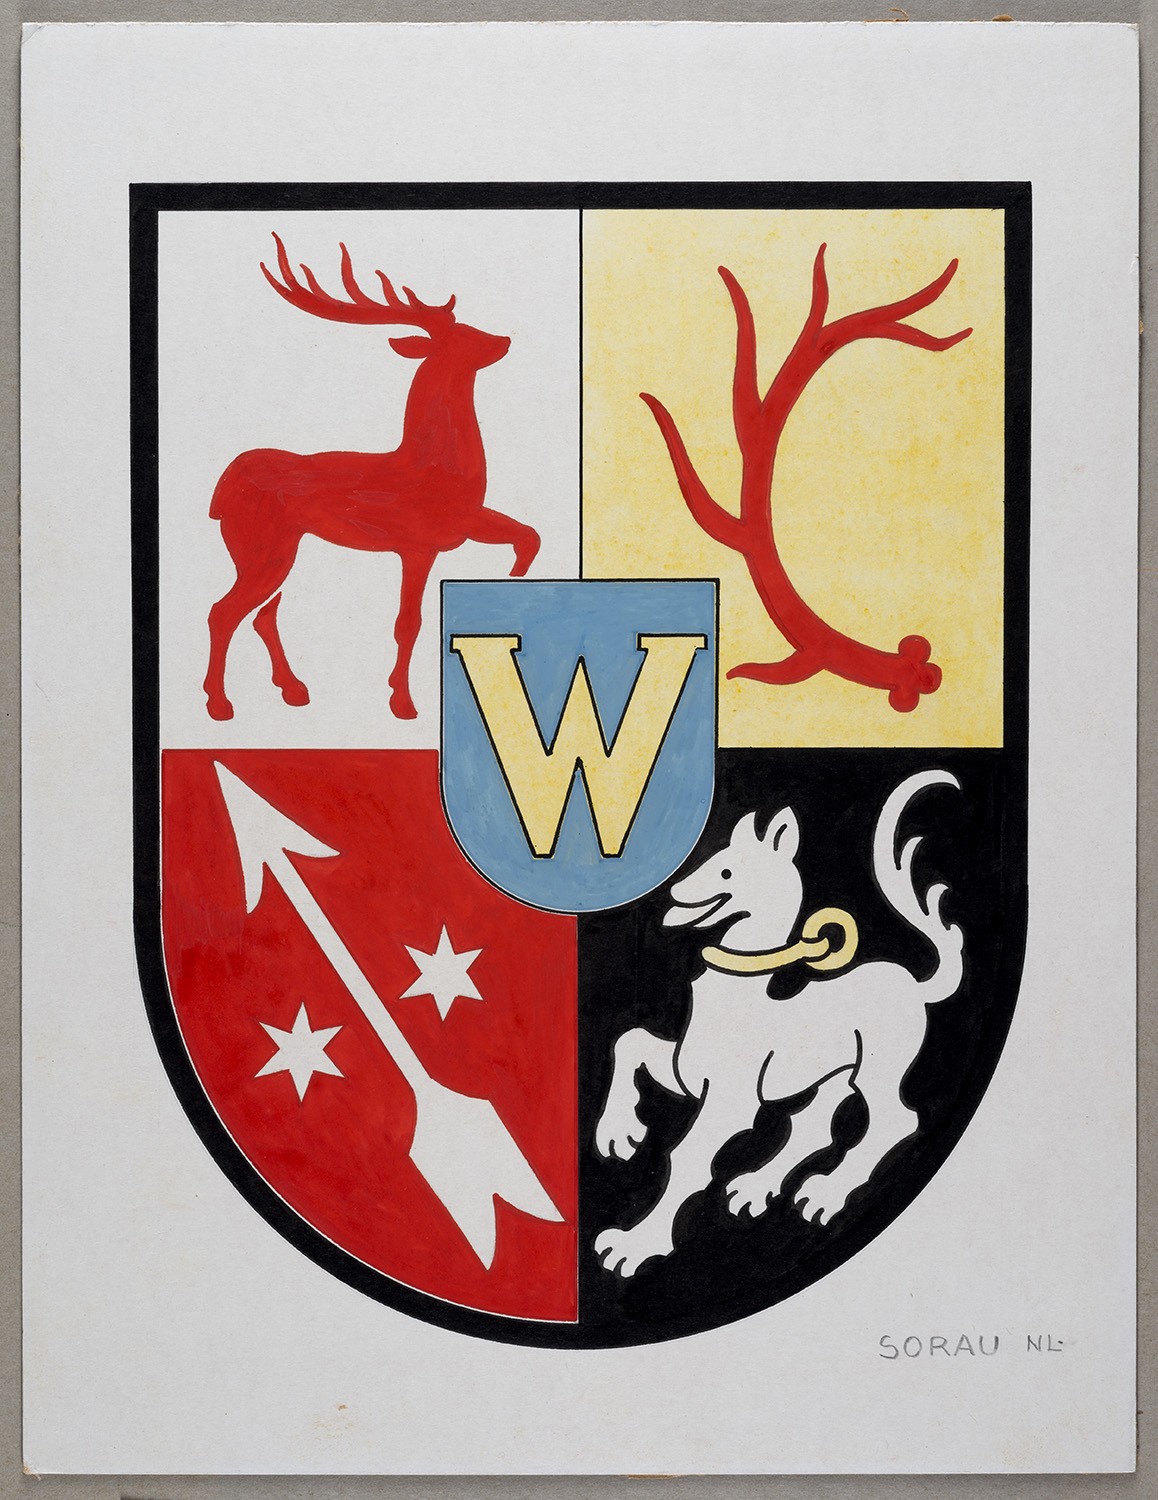 Wappen der Stadt Sorau/Niederlausitz (Landesgeschichtliche Vereinigung für die Mark Brandenburg e.V., Archiv CC BY)